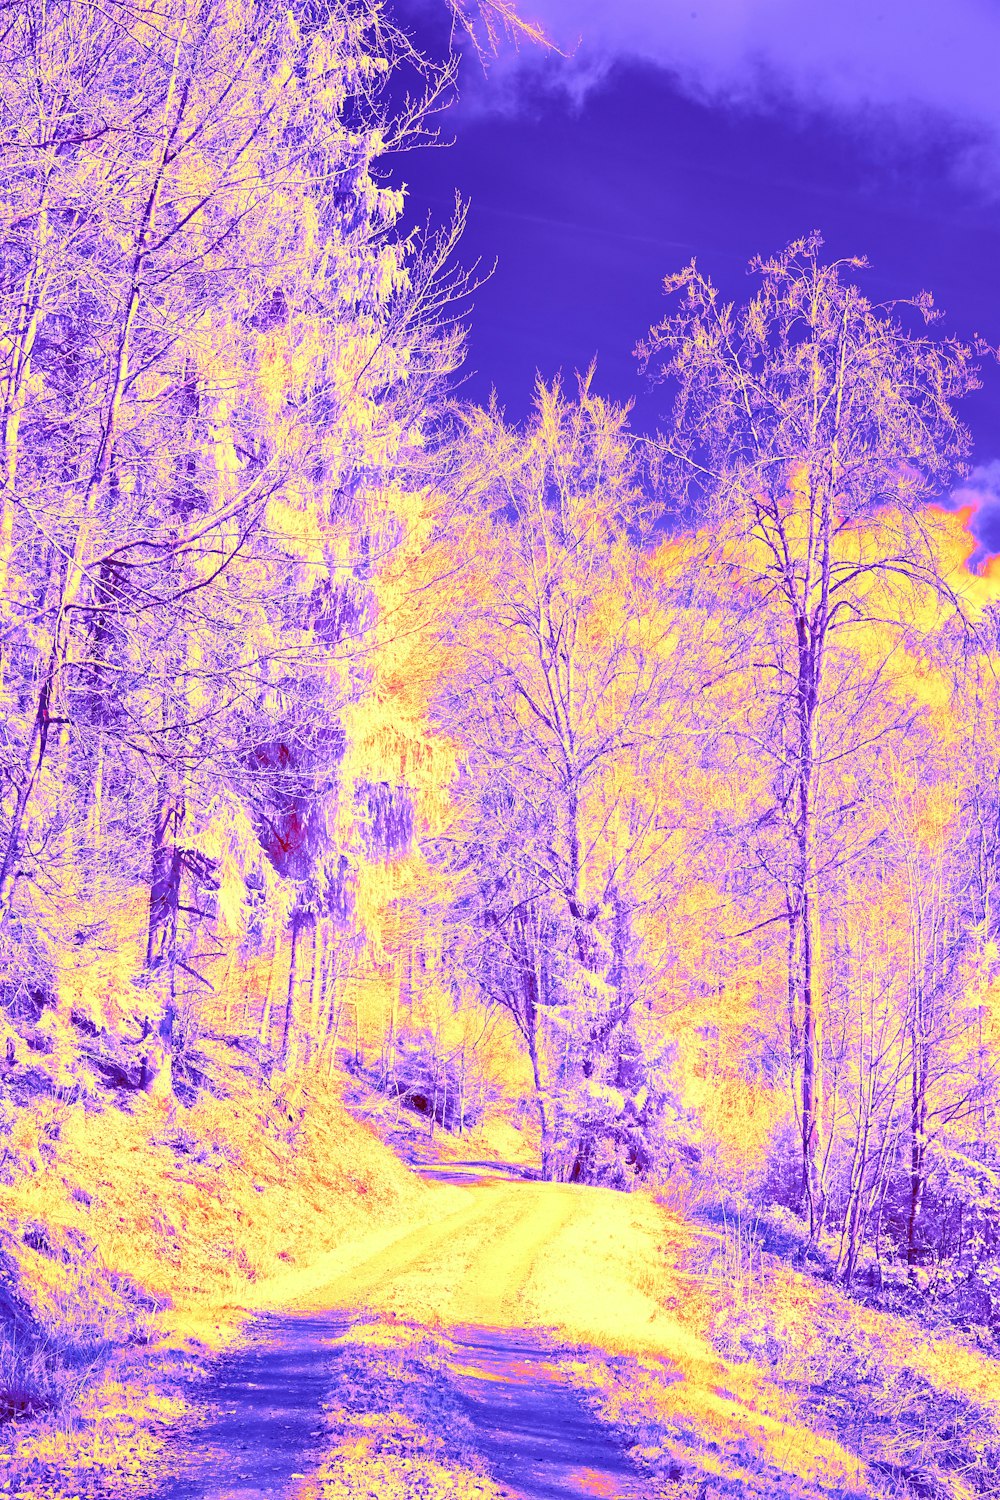 숲 속 도로의 적외선 이미지